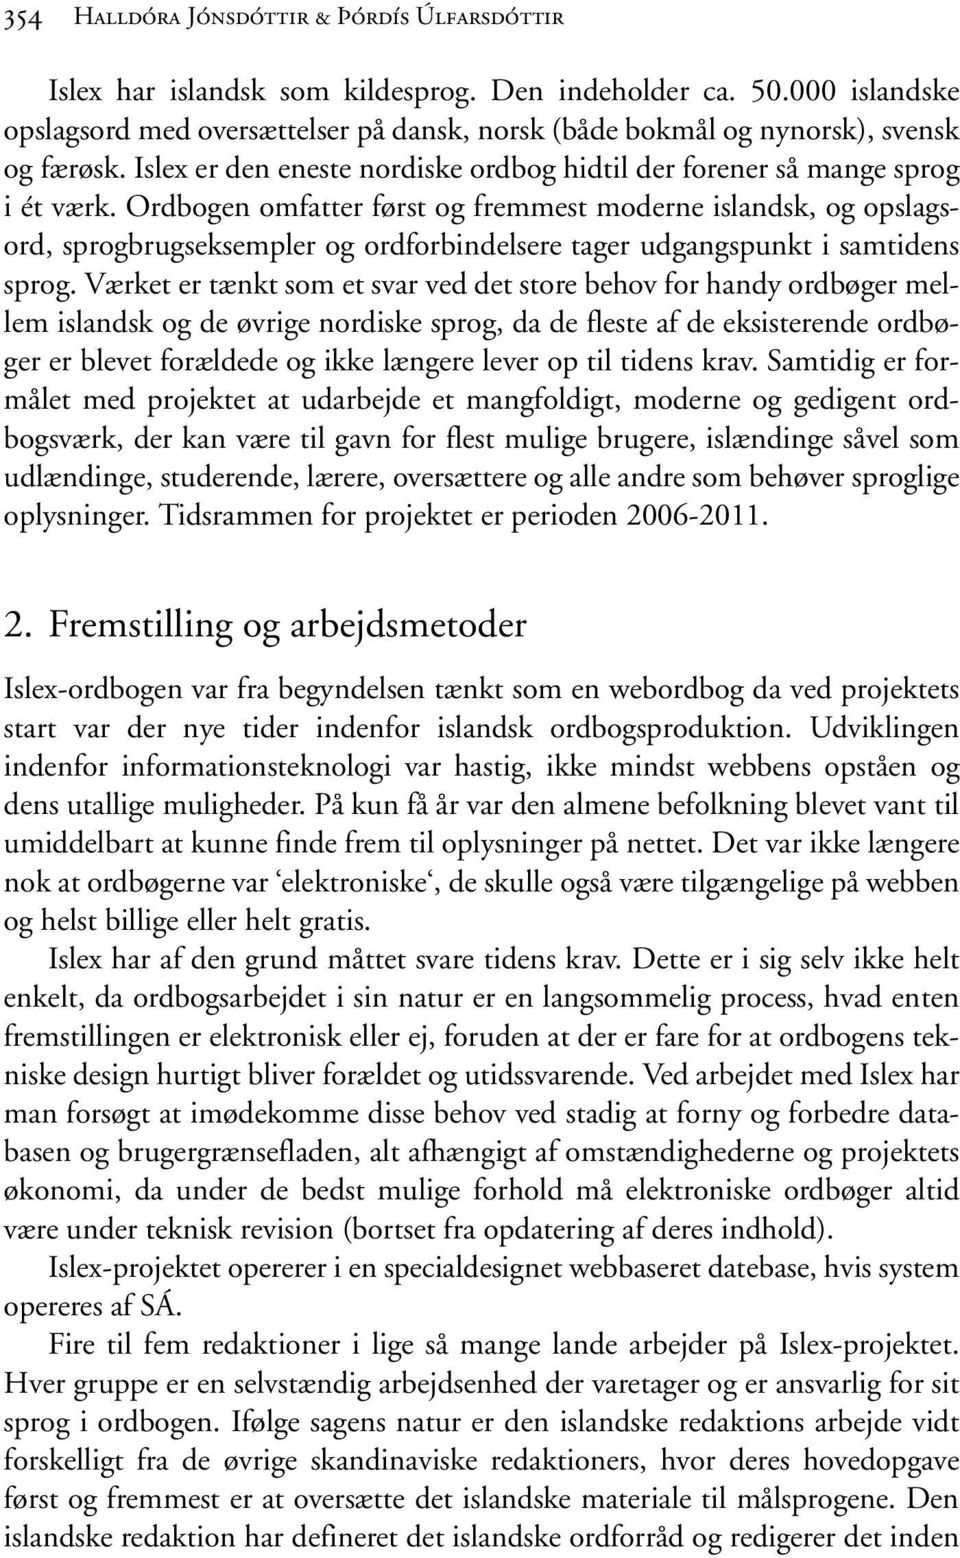 Ordbogen omfatter først og fremmest moderne islandsk, og opslagsord, sprogbrugseksempler og ordforbindelsere tager udgangspunkt i samtidens sprog.